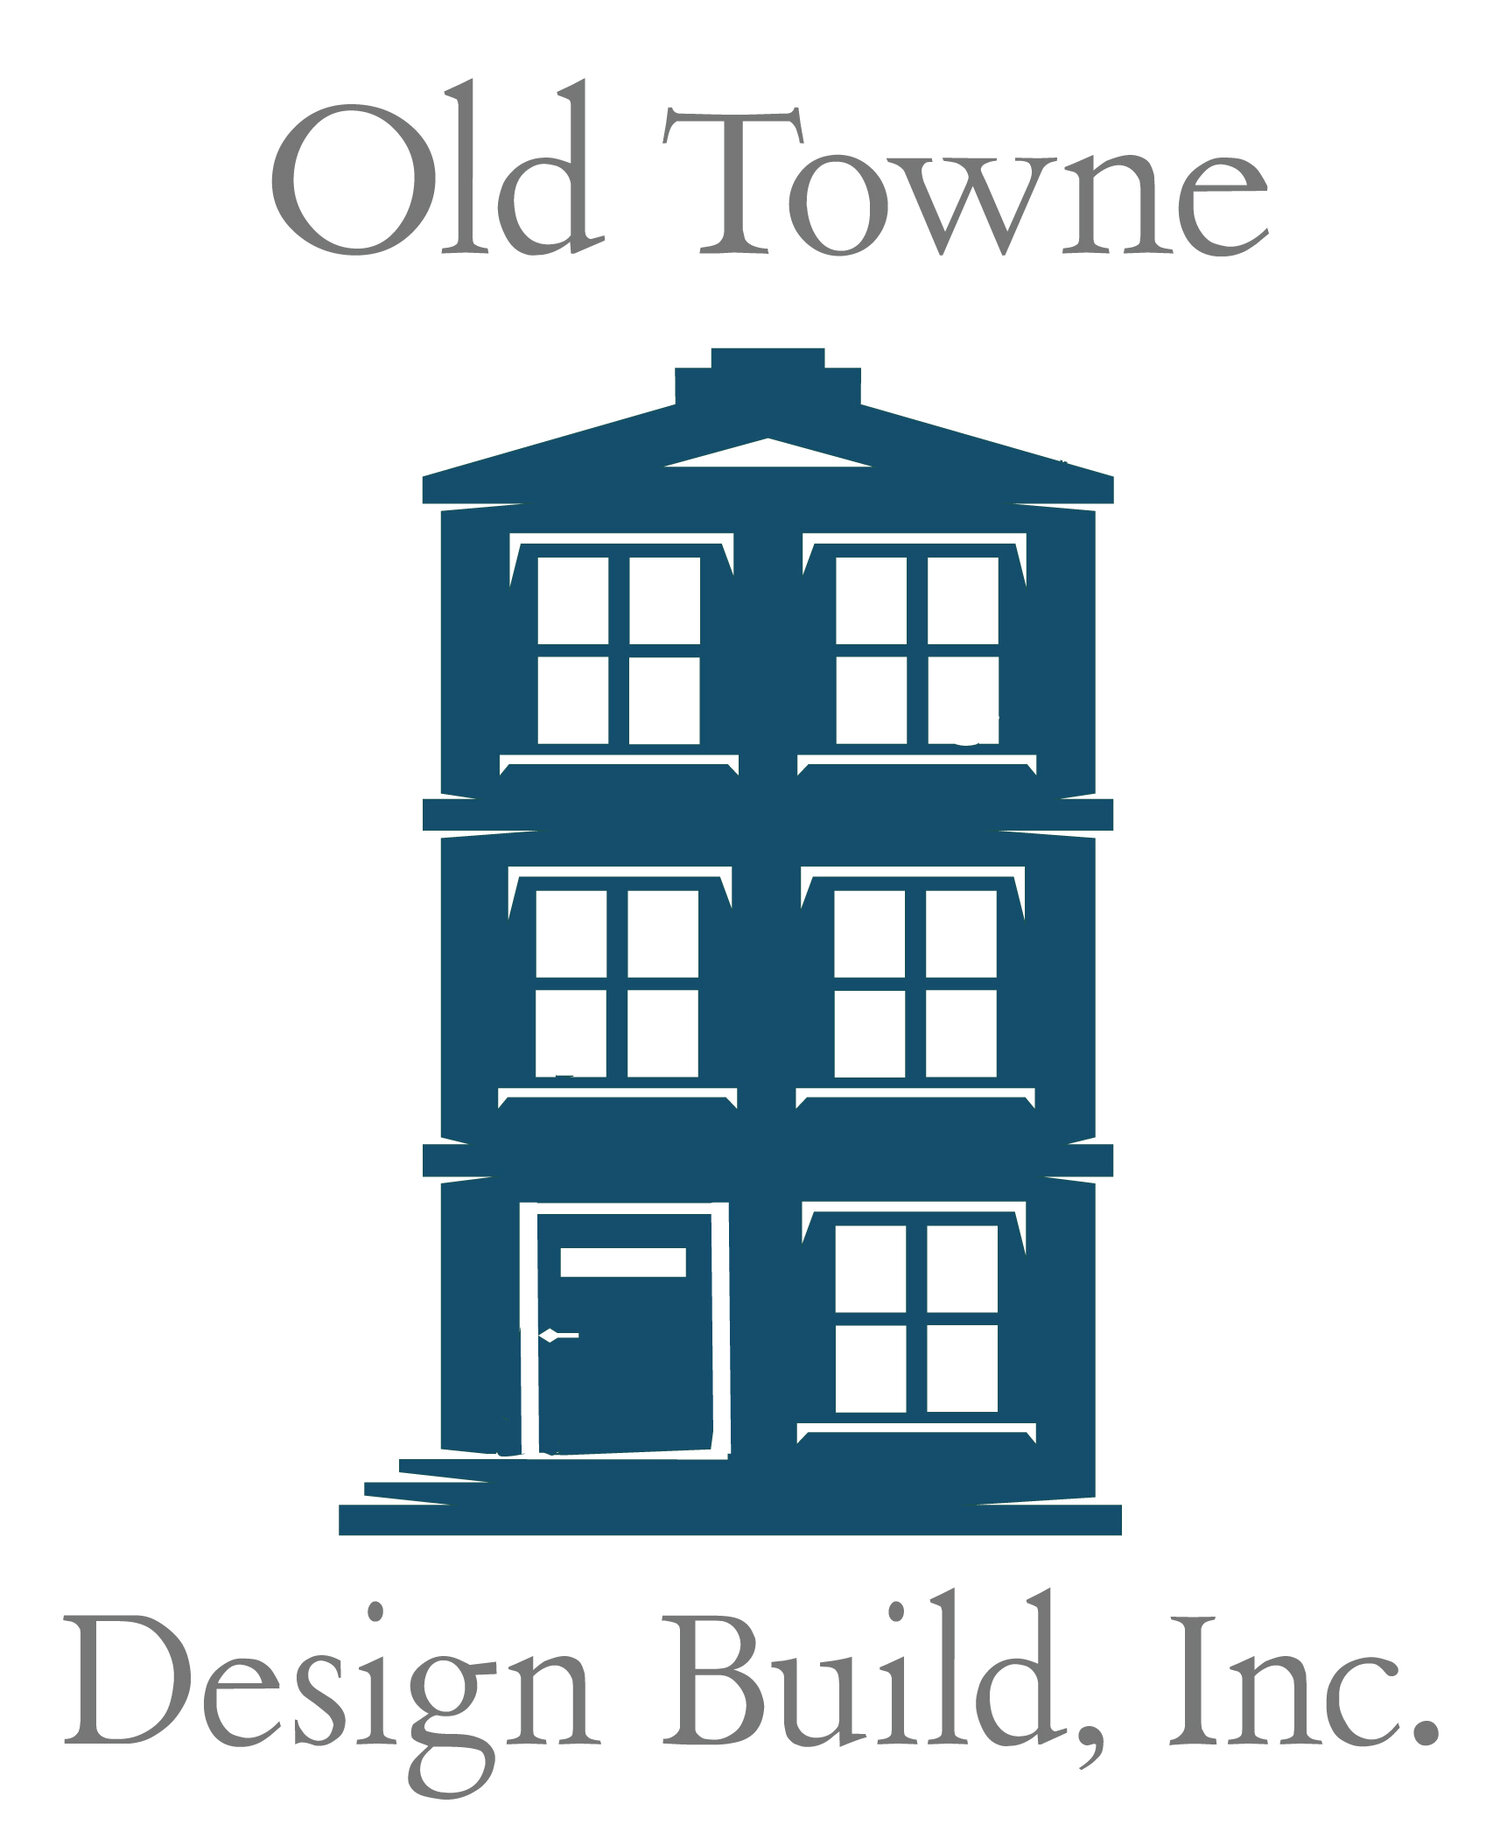 Old Towne Design Build, Inc.